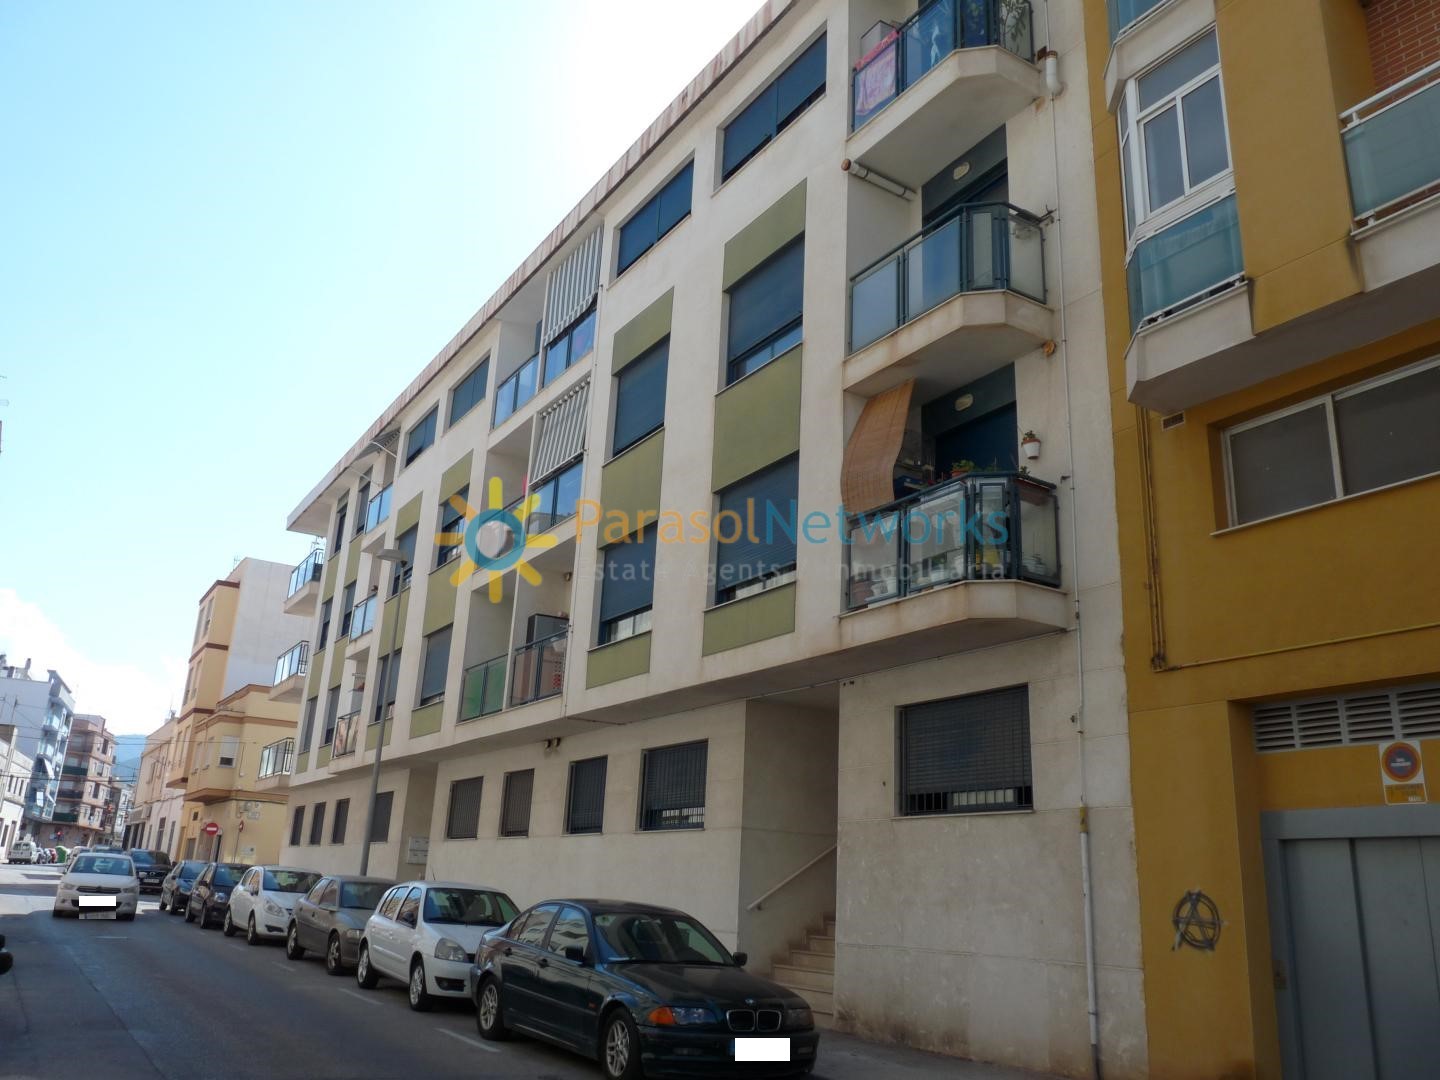 Wohnung zu verkaufen in Oliva-Ref:781